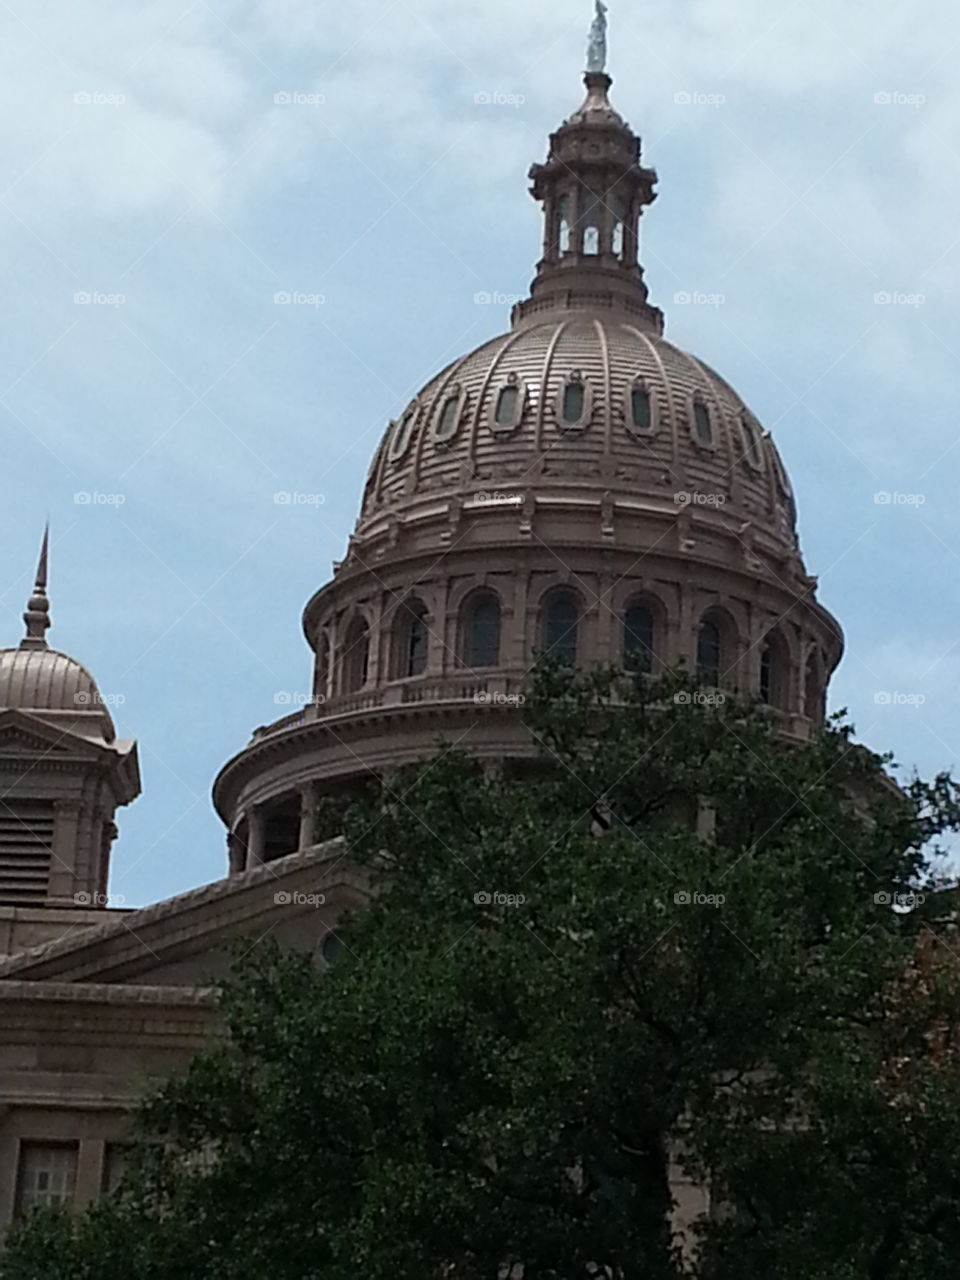 Austin Texas. State Capital Buildings Austin Texas.